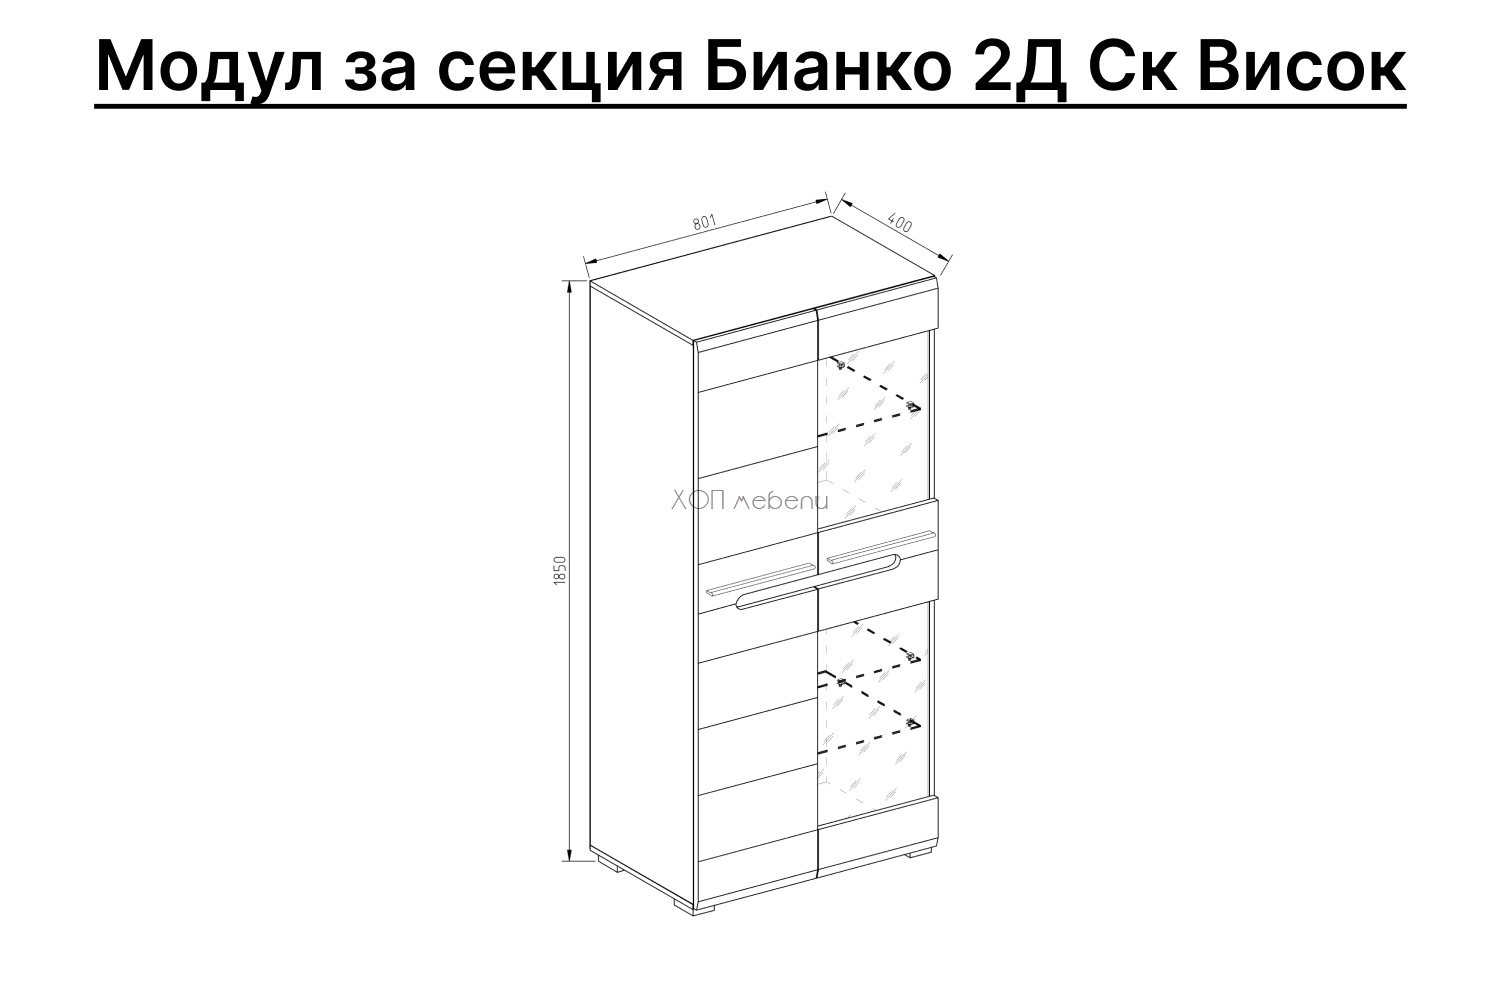 Размери на Висок шкаф Бианко 2Д Ск - графит ID 12559